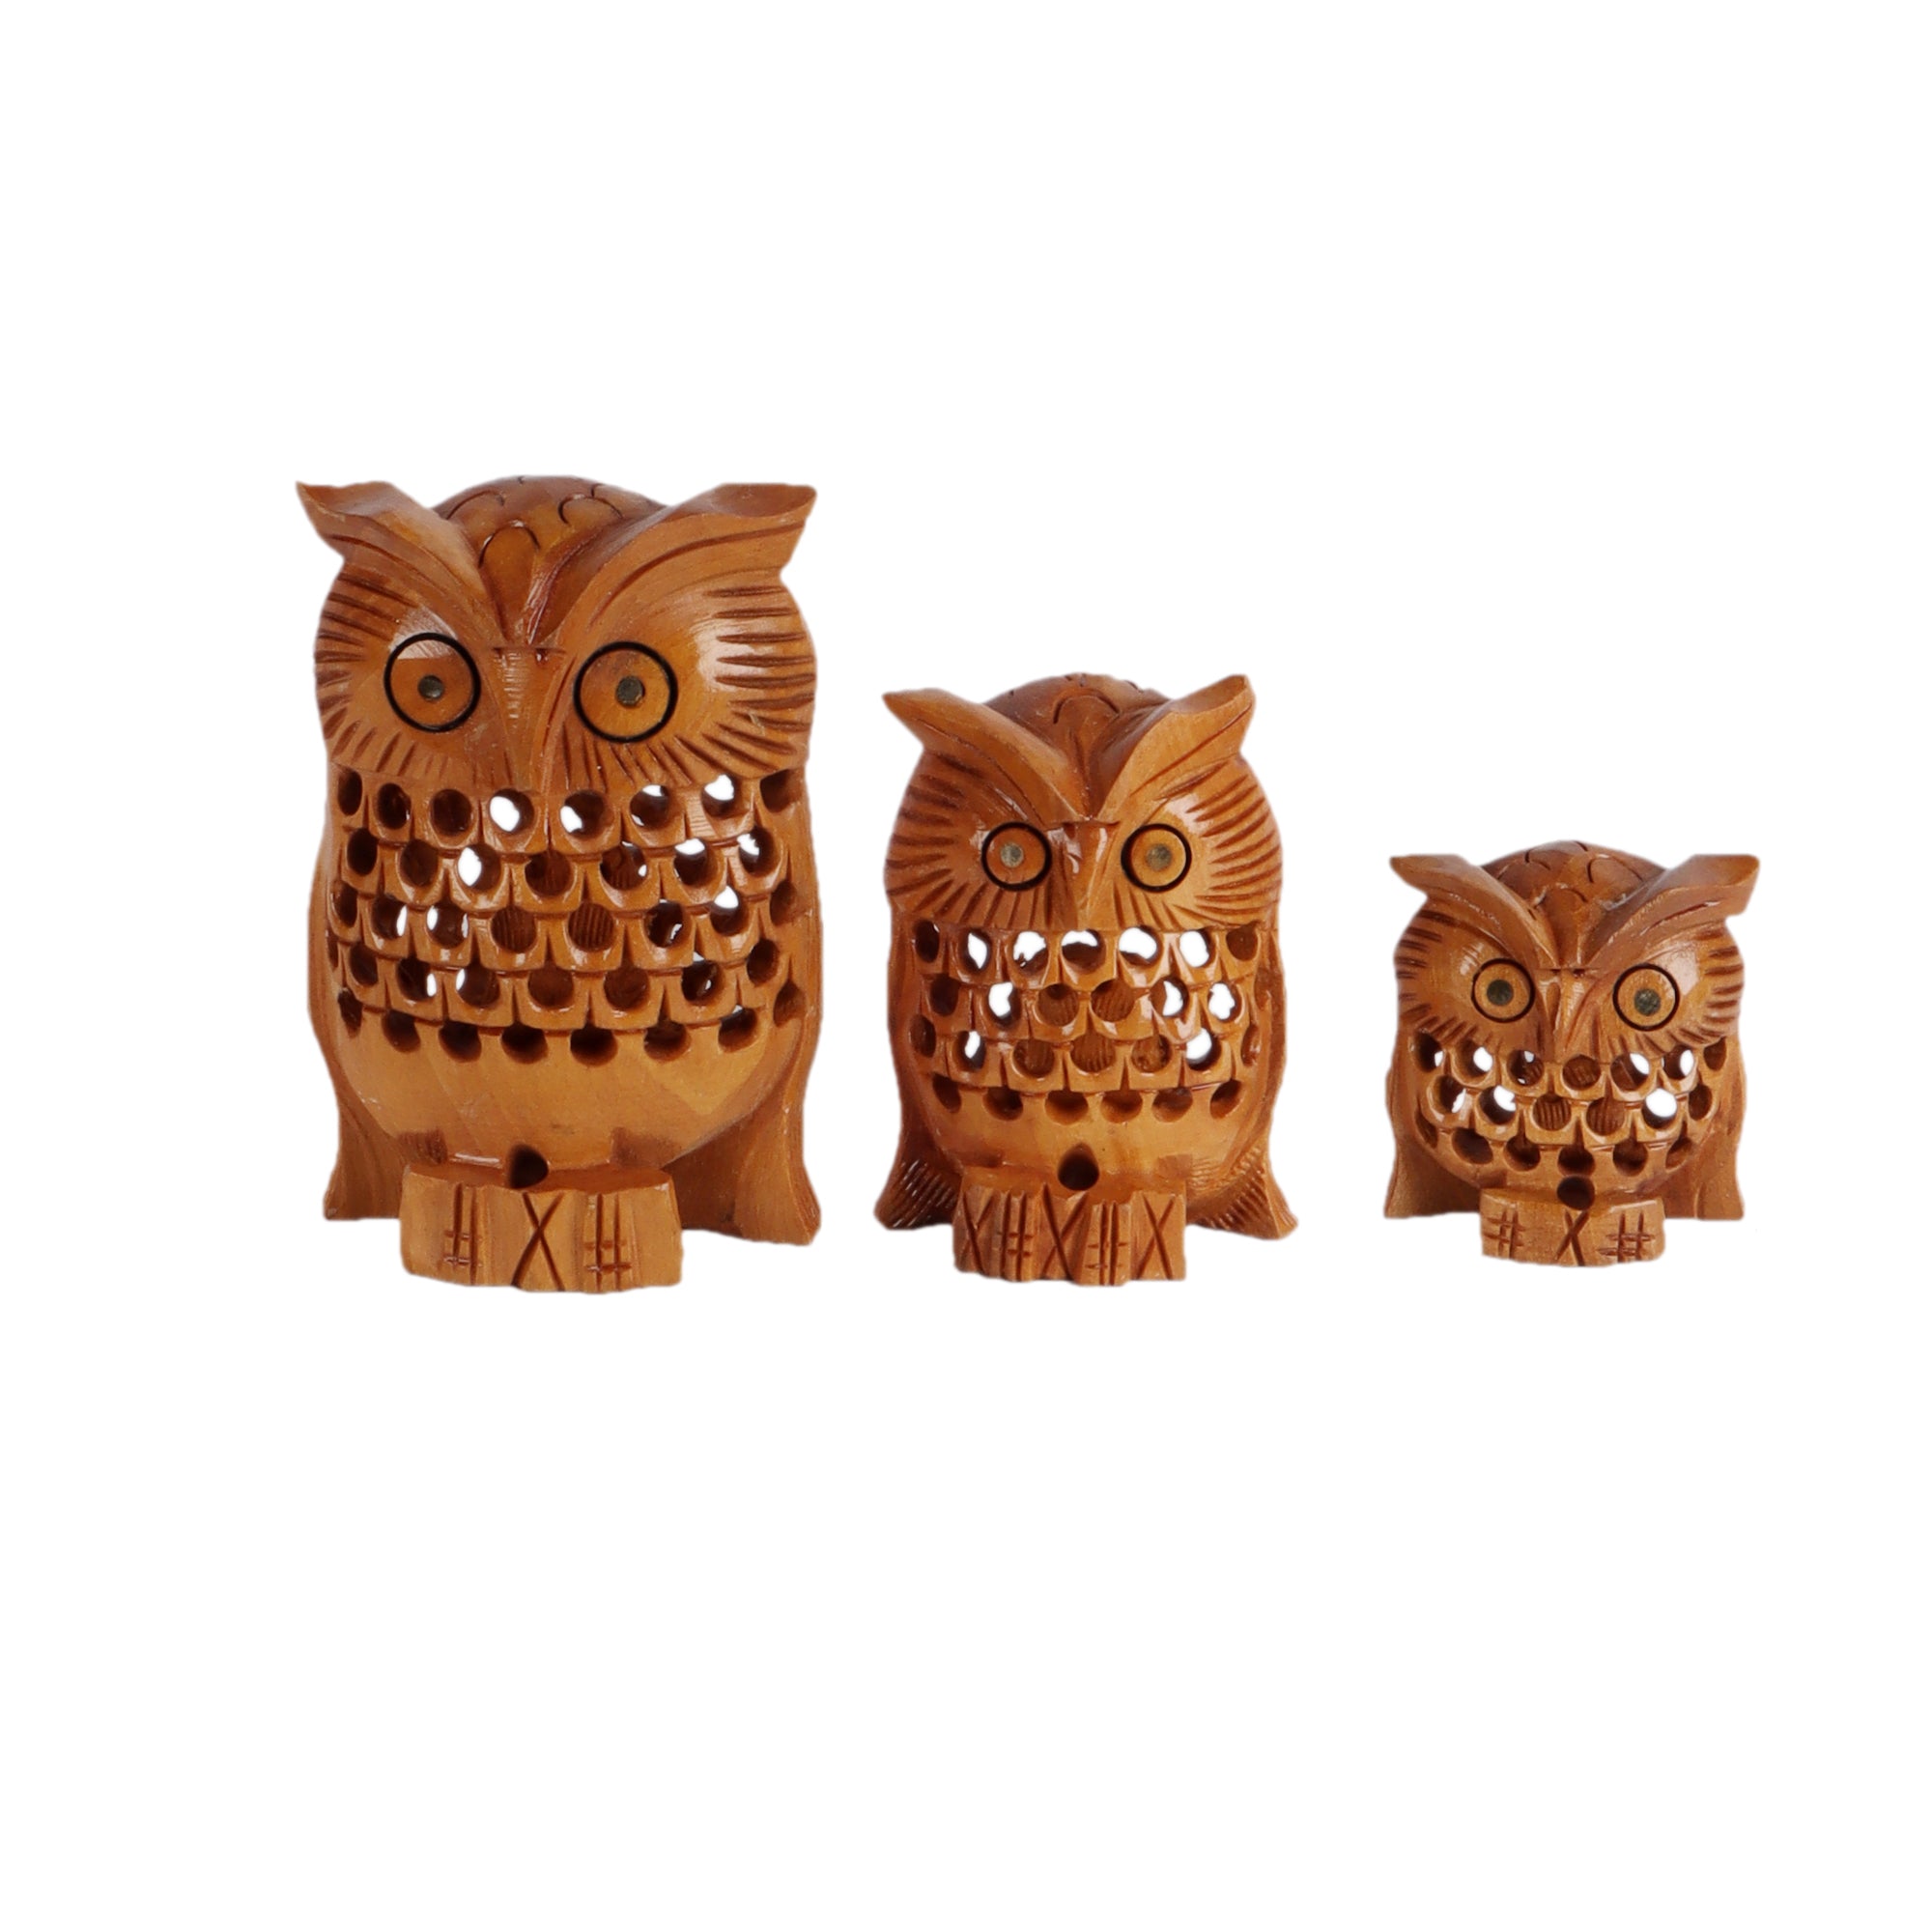 The Little Owl Family (Set of 3)